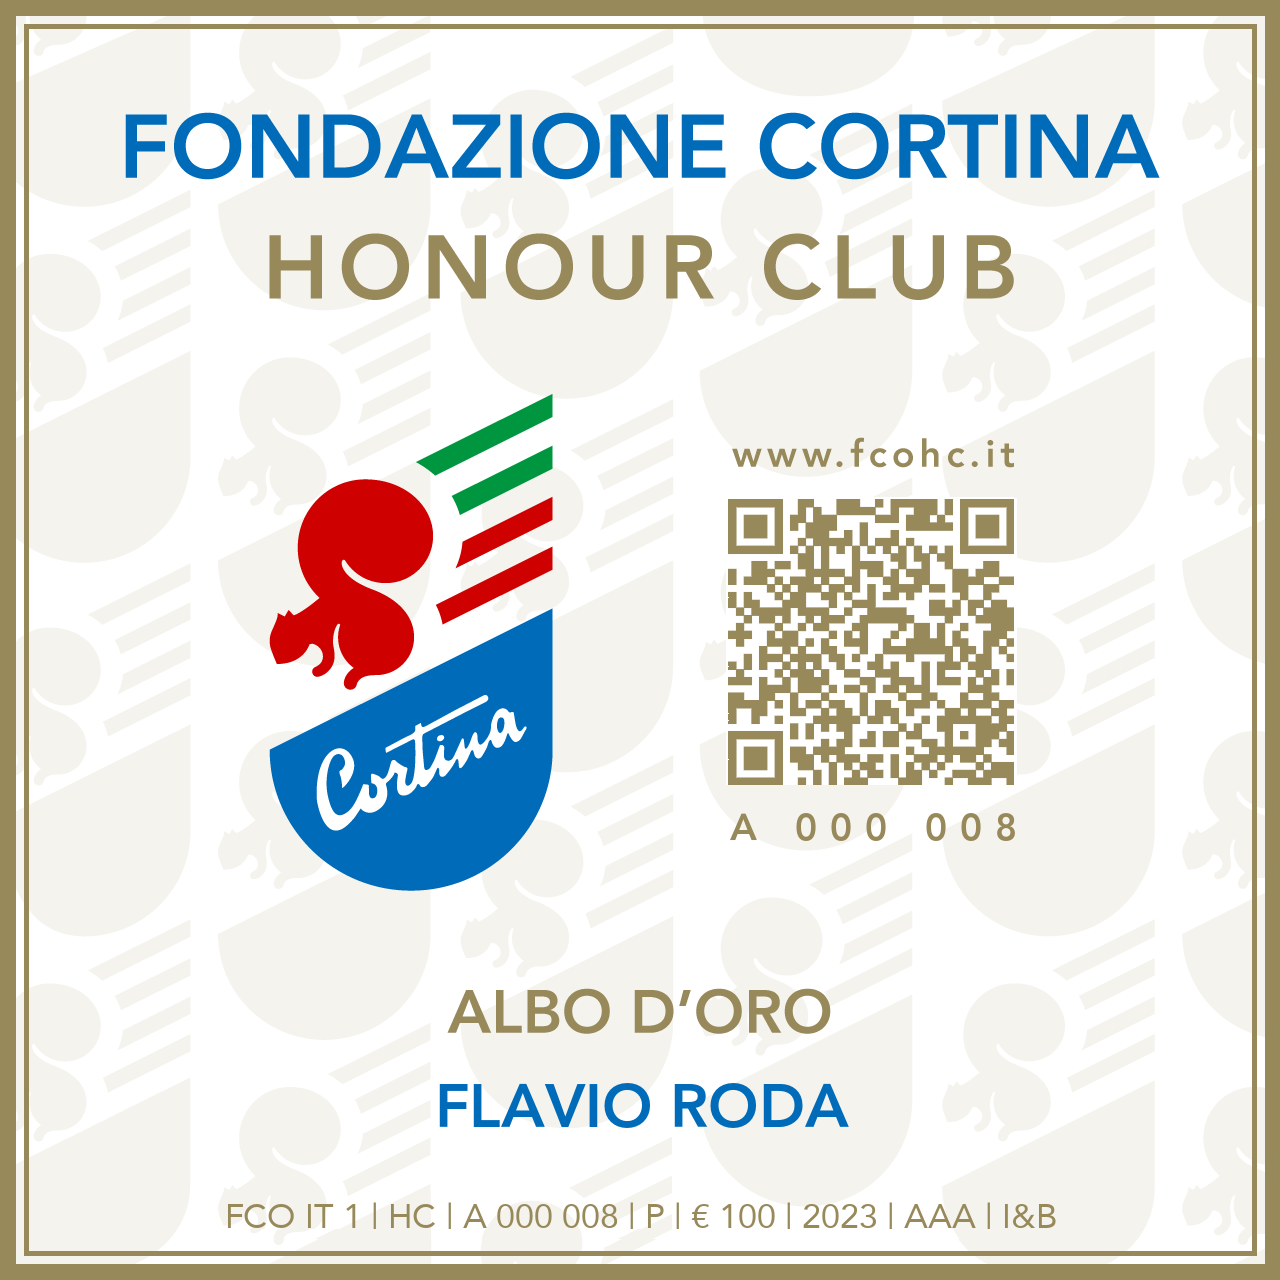 Fondazione Cortina Honour Club - Token Id A 000 008 - FLAVIO RODA